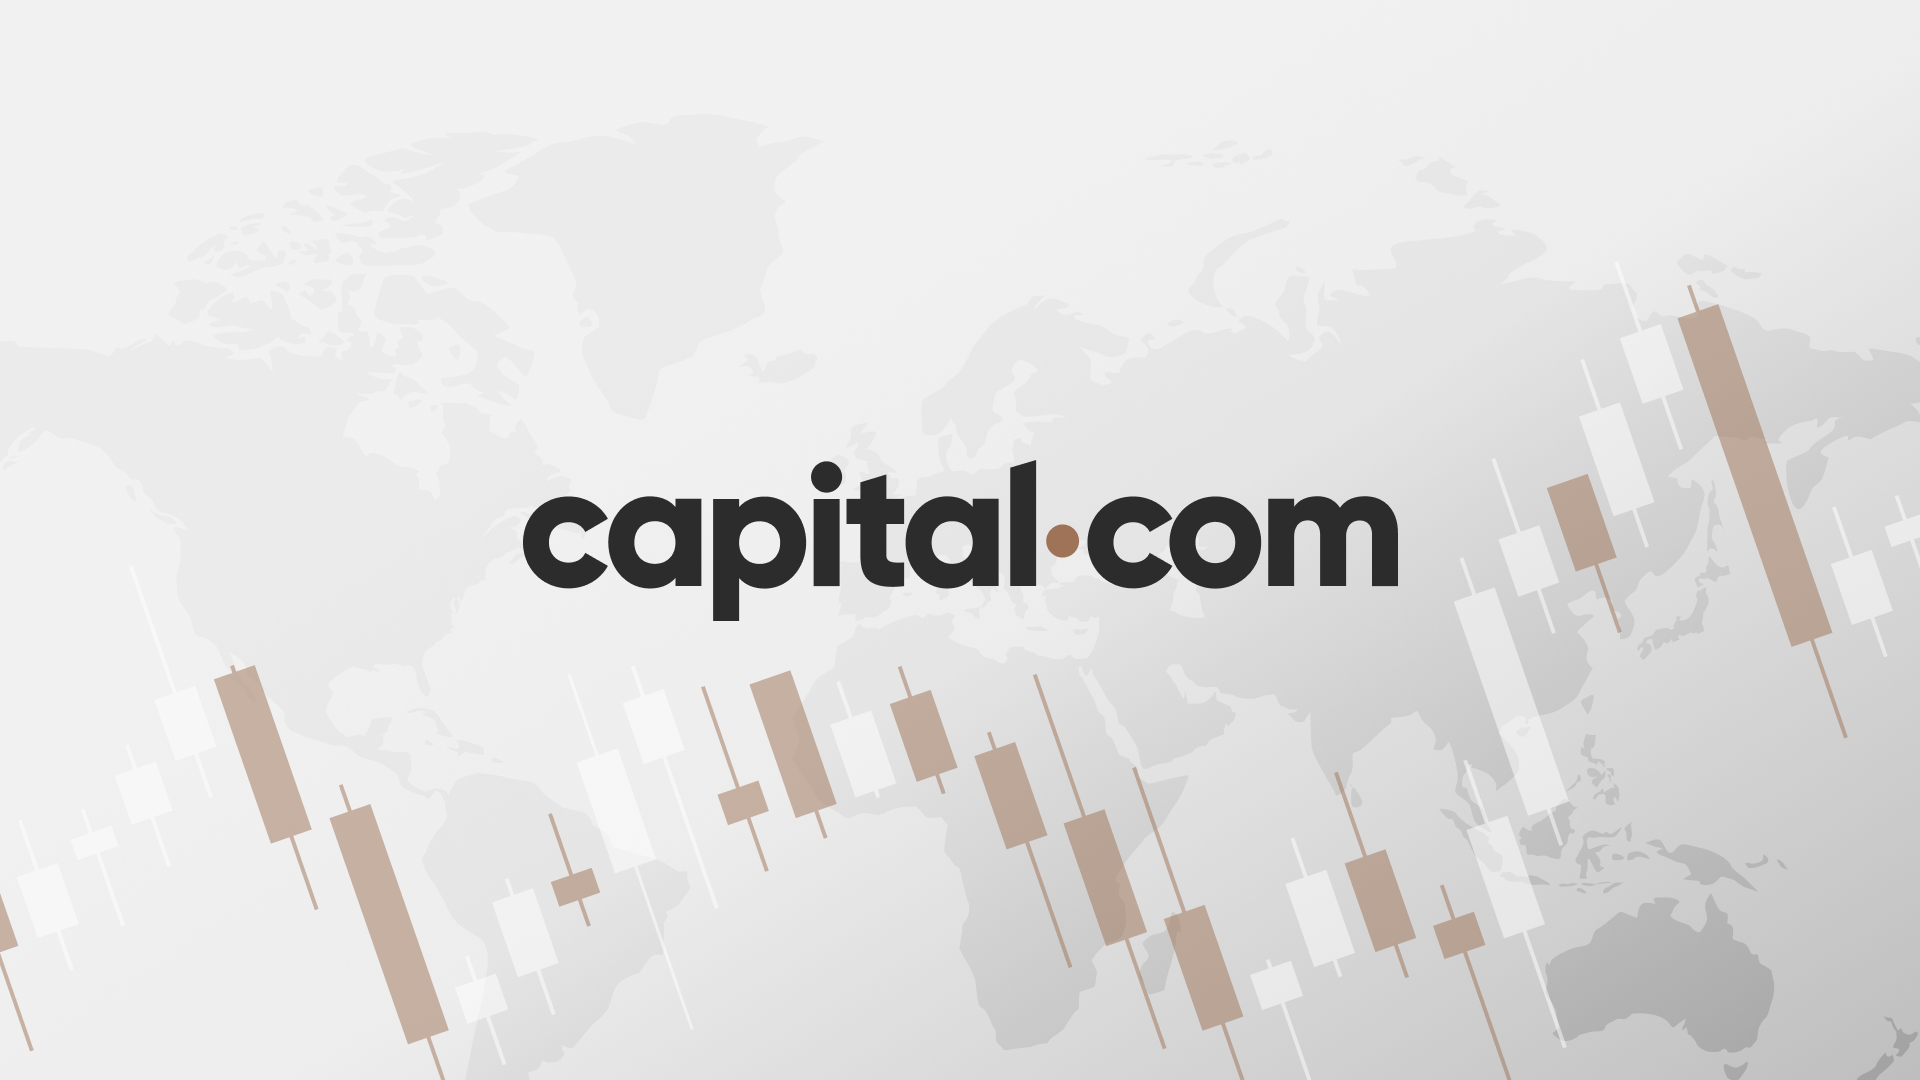 تتصاعد حجم التداول في Capital.com بنسبة 53% في عام 2023 مع استمرار التركيز على منطقة الشرق الأوسط وشمال أفريقيا